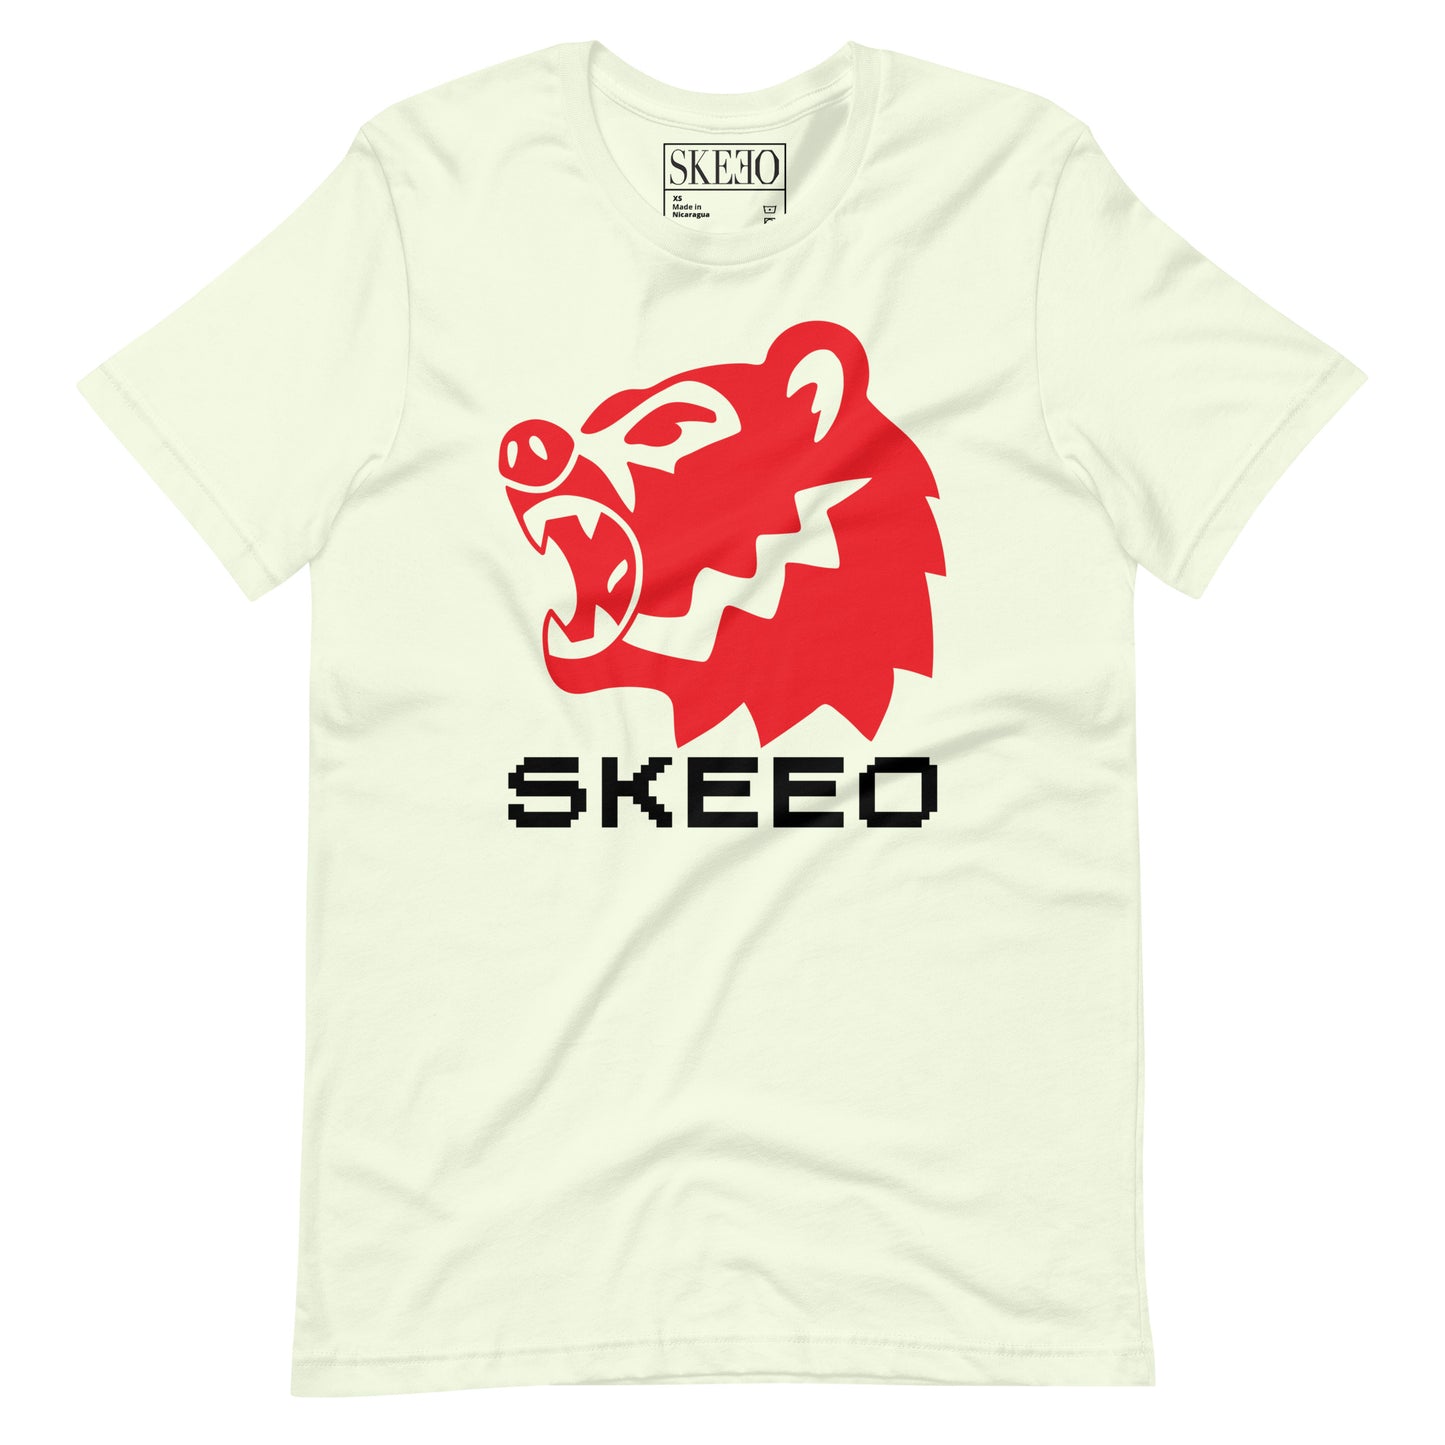 A SK Bear t-shirt